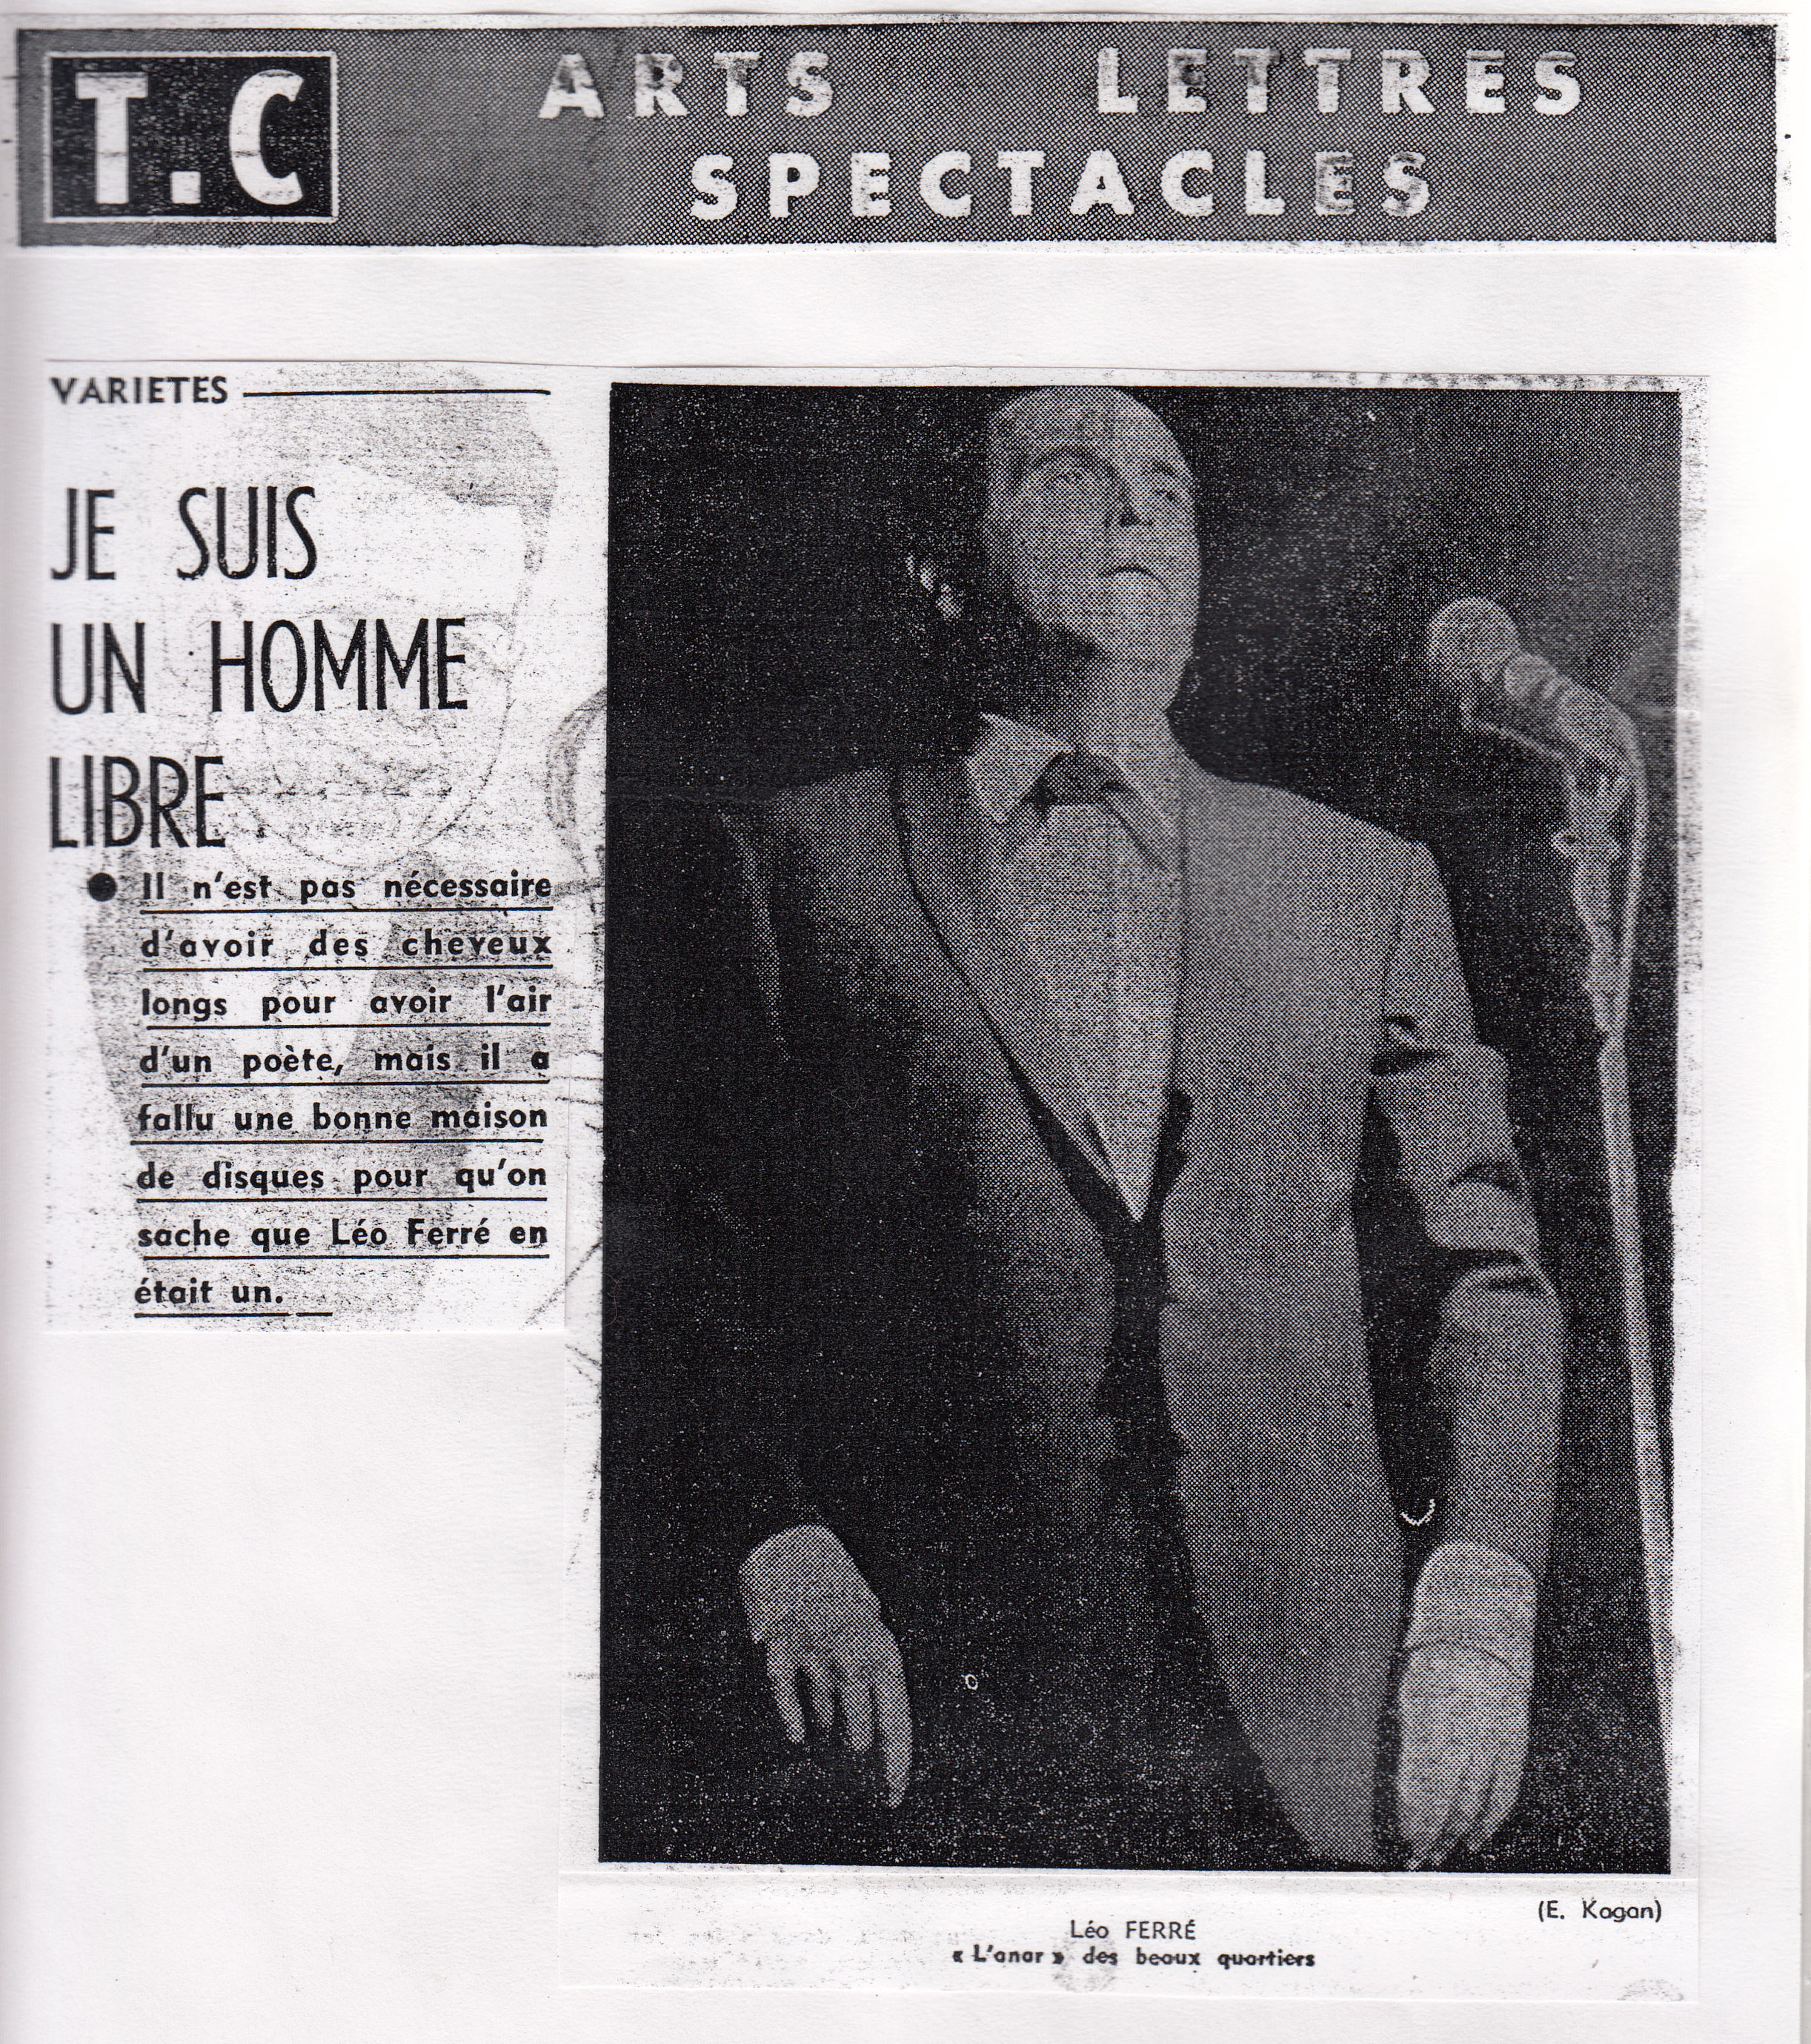 Léo Ferré - Témoignage chrétien du 1er décembre 1961